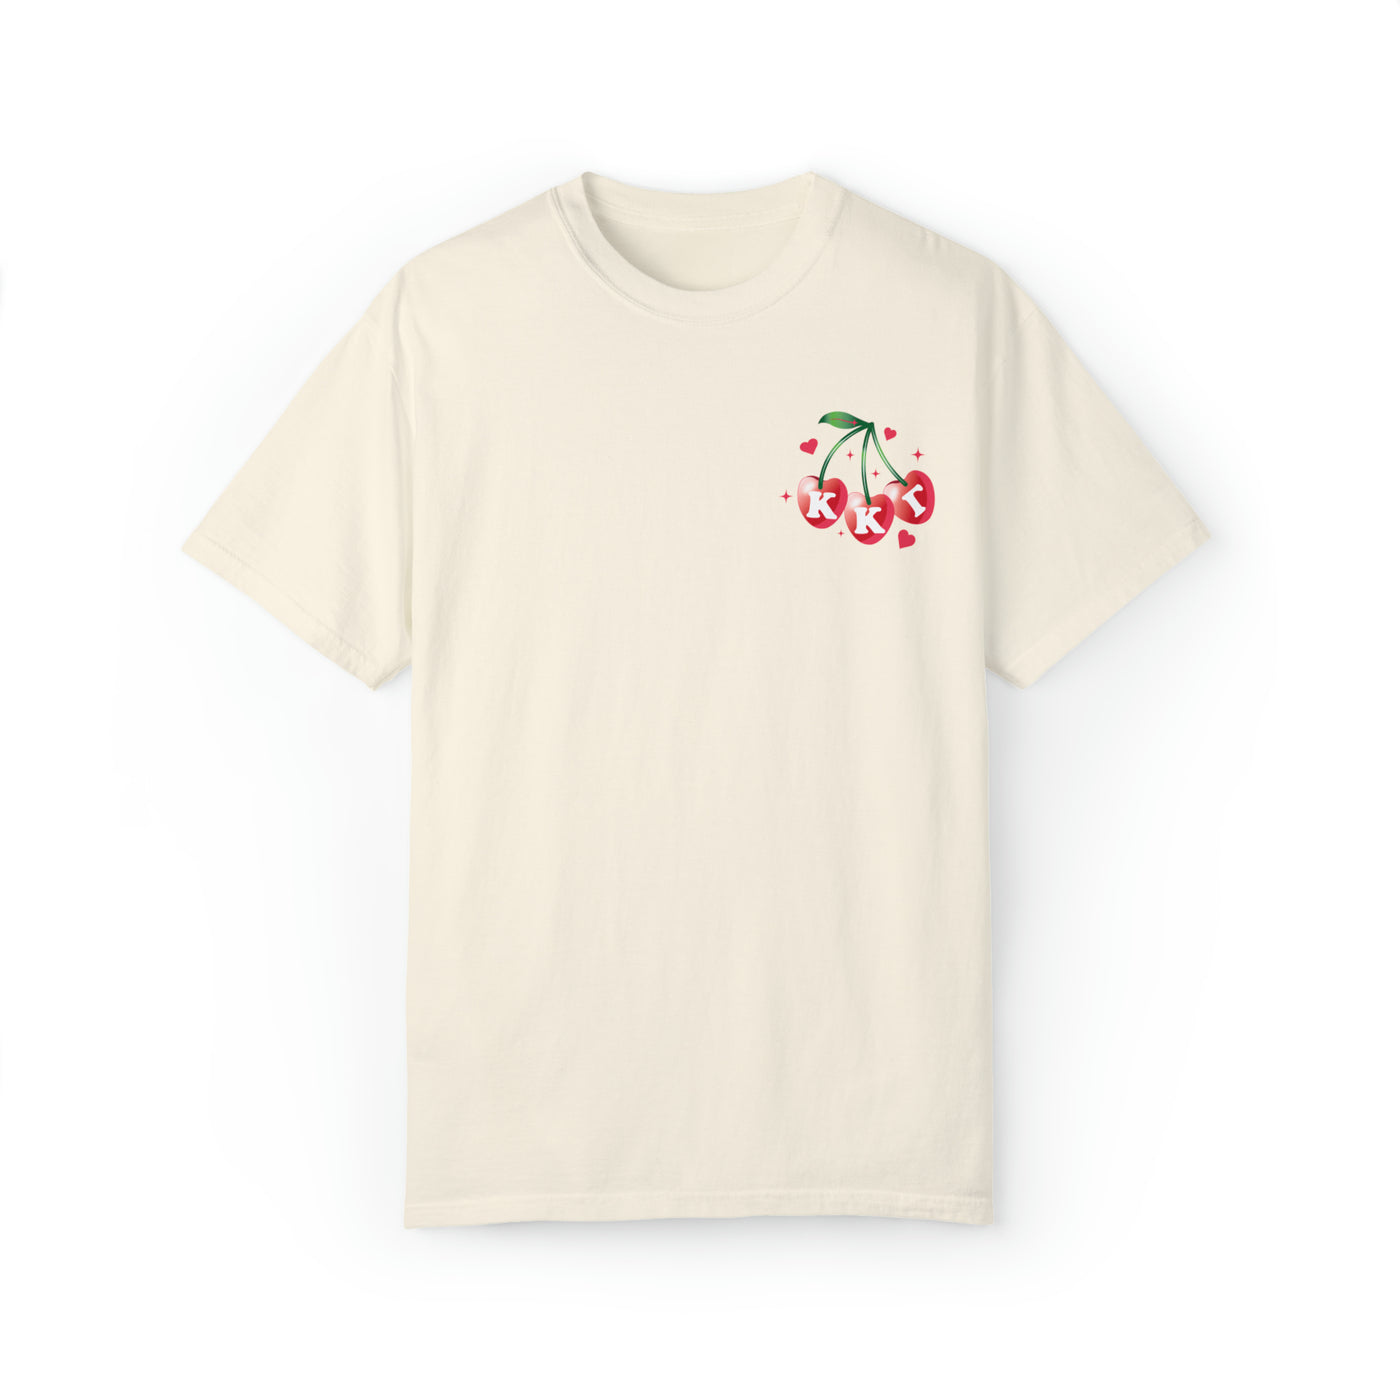 Kappa Kappa Gamma Cherry Airbrush Sorority T-shirt